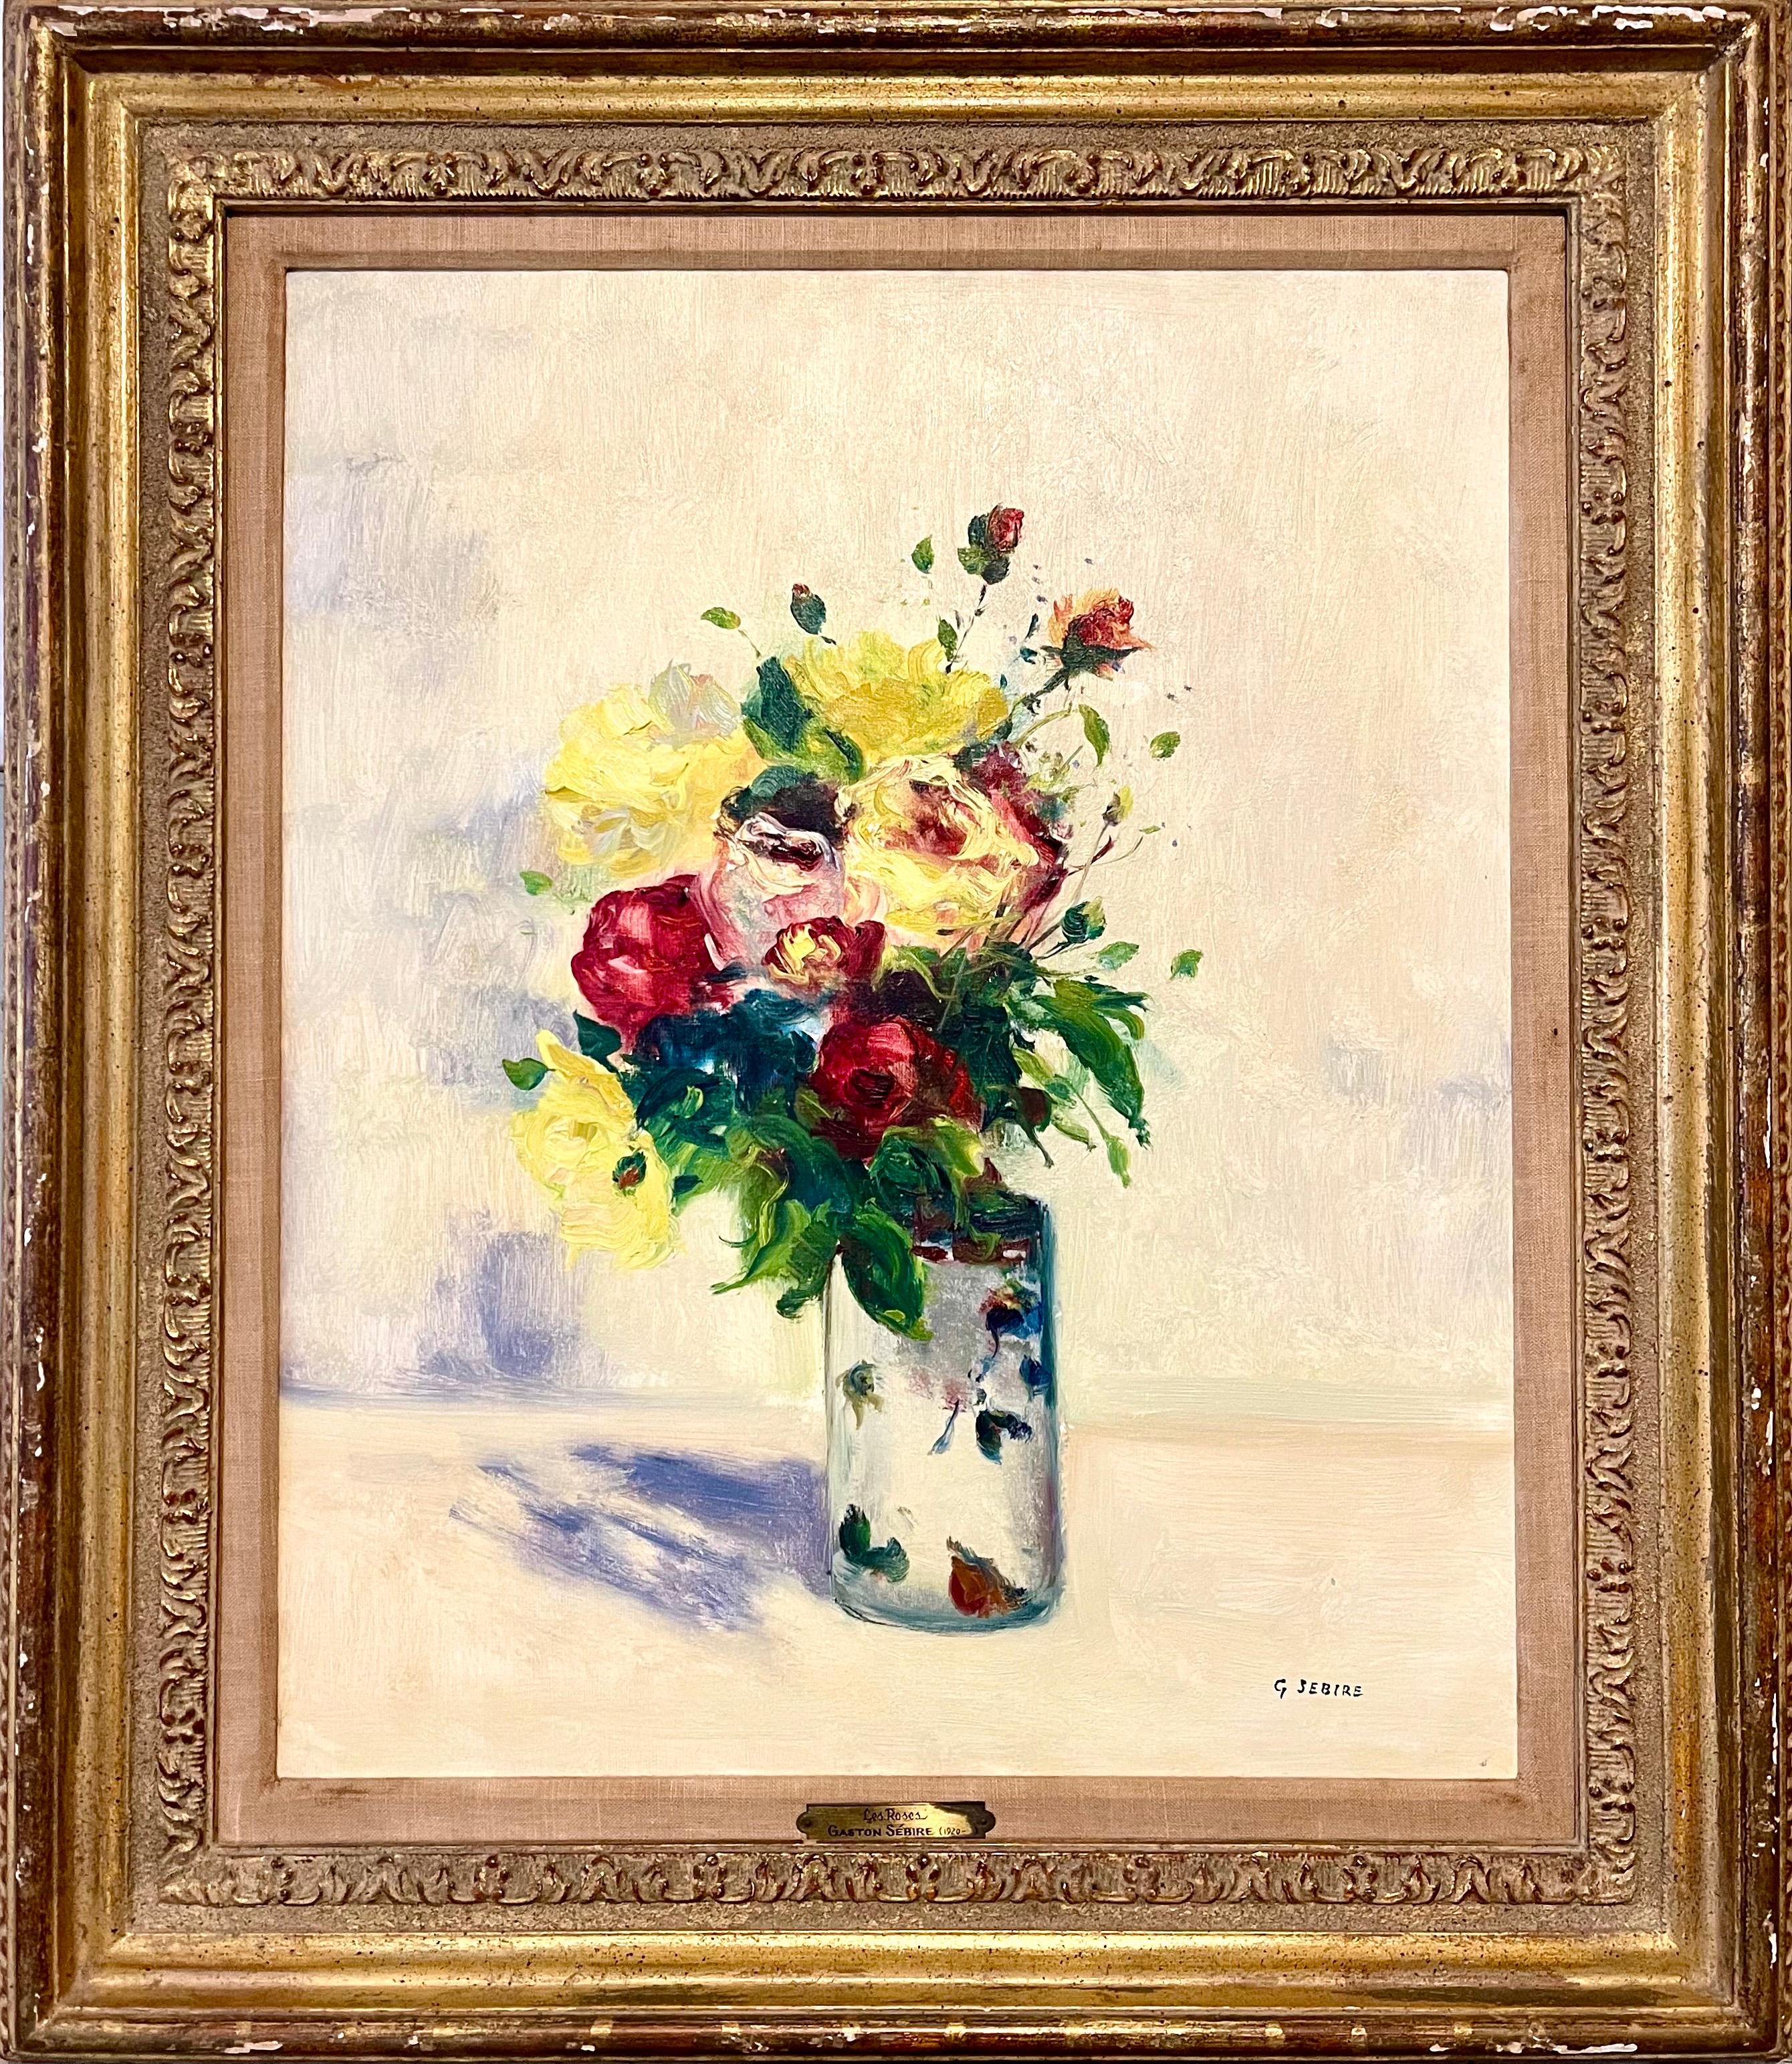 Les Roses
Gemischter Rosenstrauß, Ölgemälde

PROVENIENZ: Erworben bei Findlay Galleries in Chicago, Illinois, Ende der 1960er Jahre, mit deren Etikett auf der Rückseite und dem ursprünglichen Preisschild

MASSNAHMEN
Rahmen: 32" X 27 3/4" Leinwand: